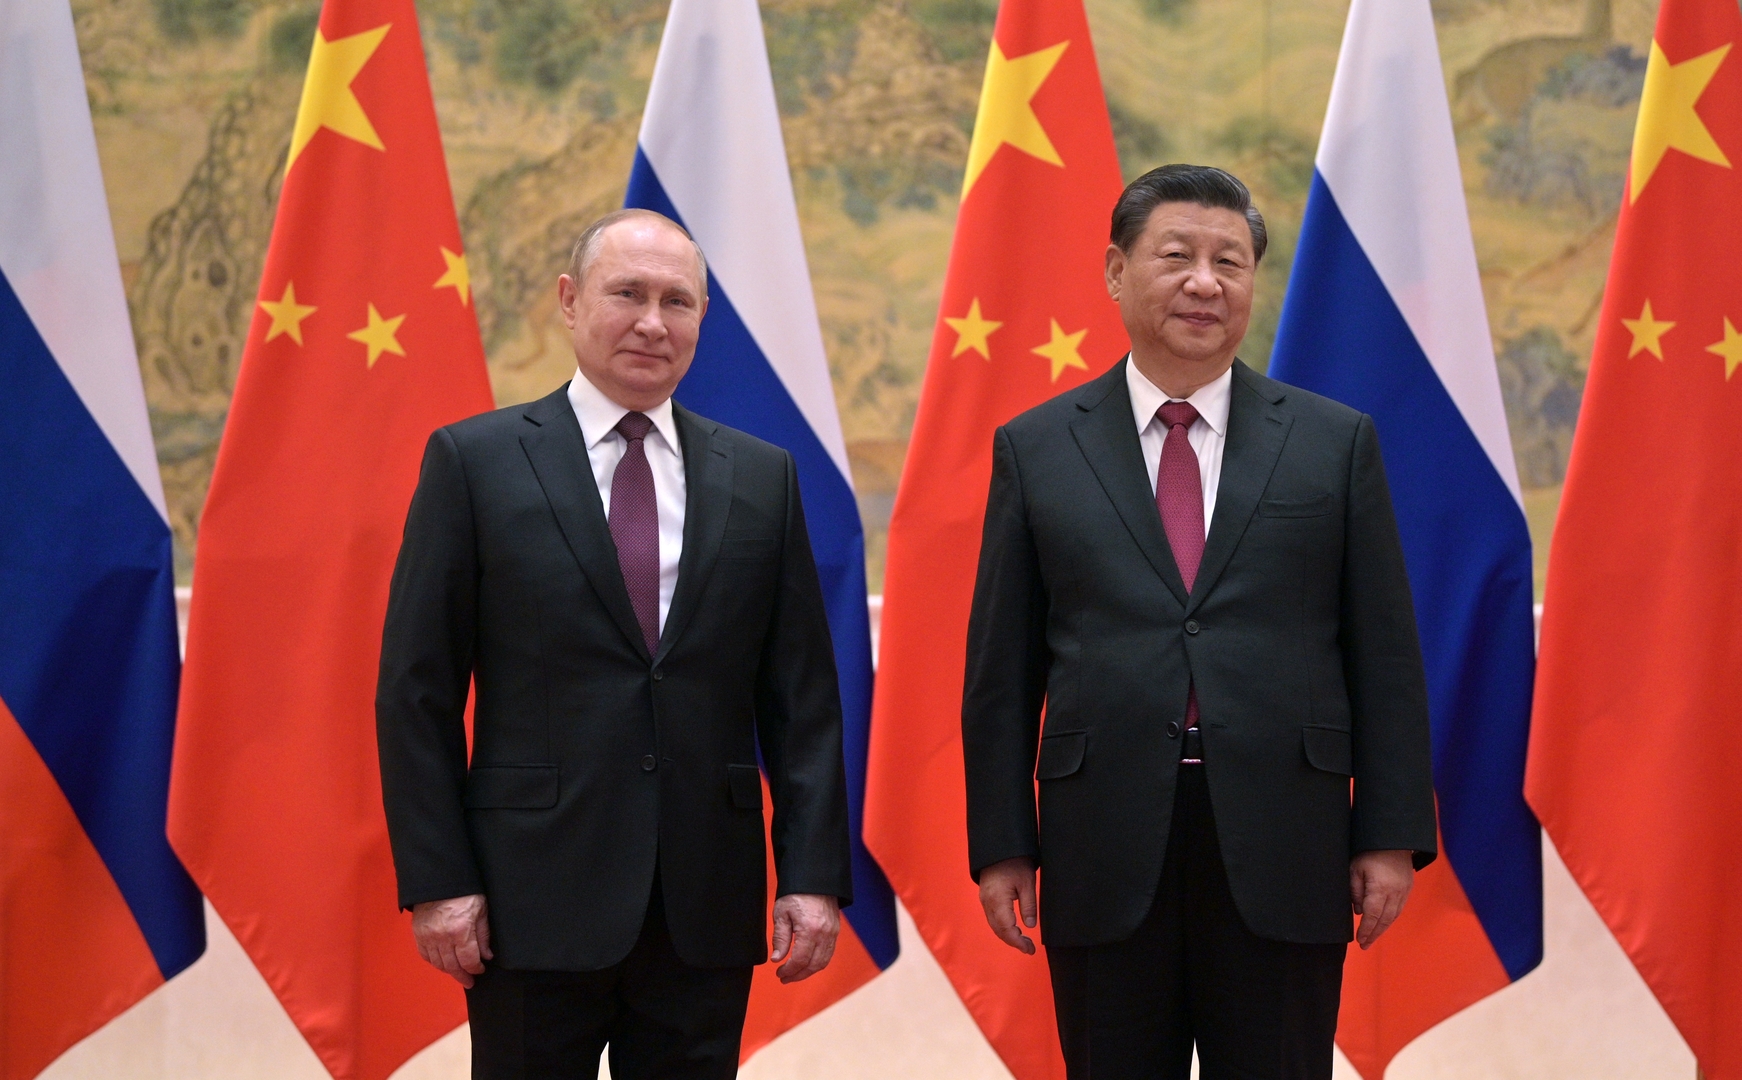 بوتين في حوار مع شي جين بينغ : التعاون الروسي الصيني عامل استقرار دولي والعمل جار على تعزيزه